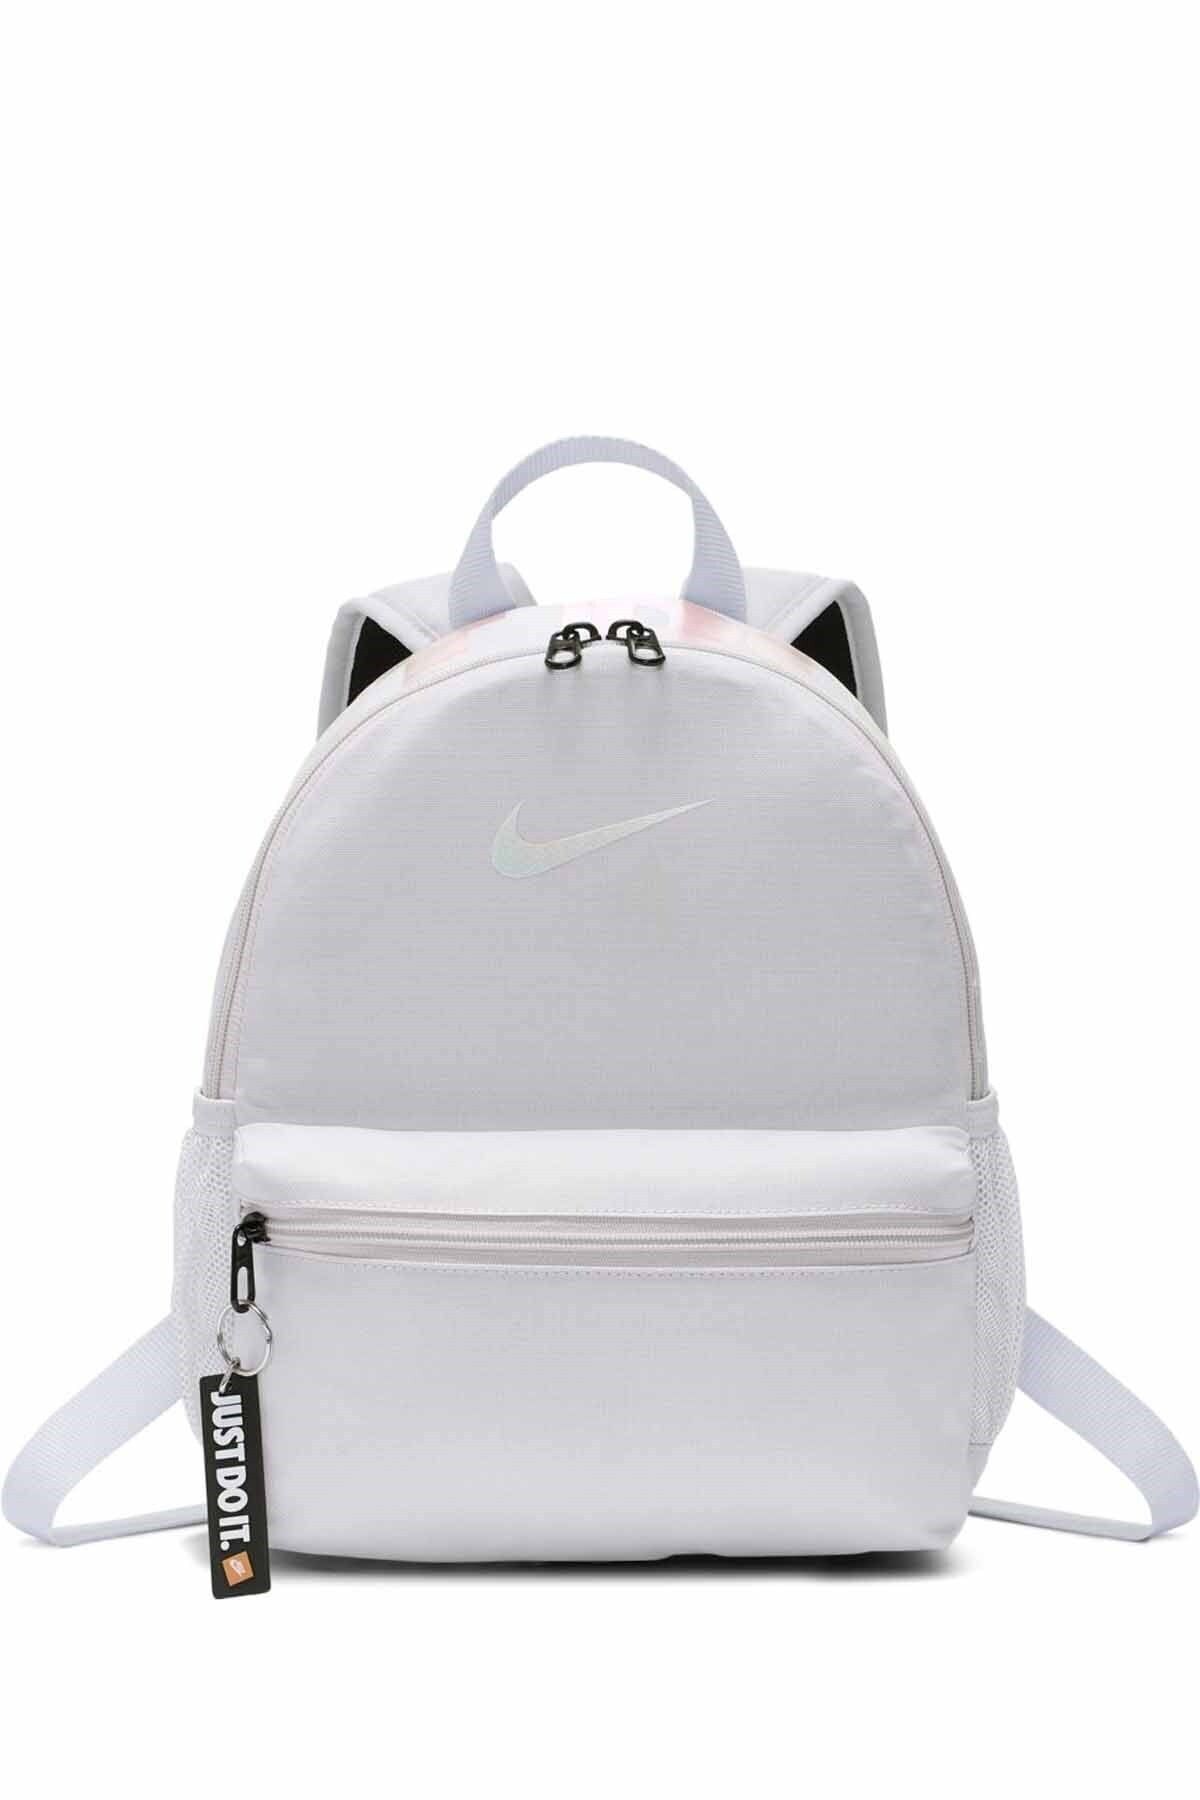 Nike Unisex Beyaz Sırt Çantası Ba5559-078 Y Brsla Jdı Mını Bkpk